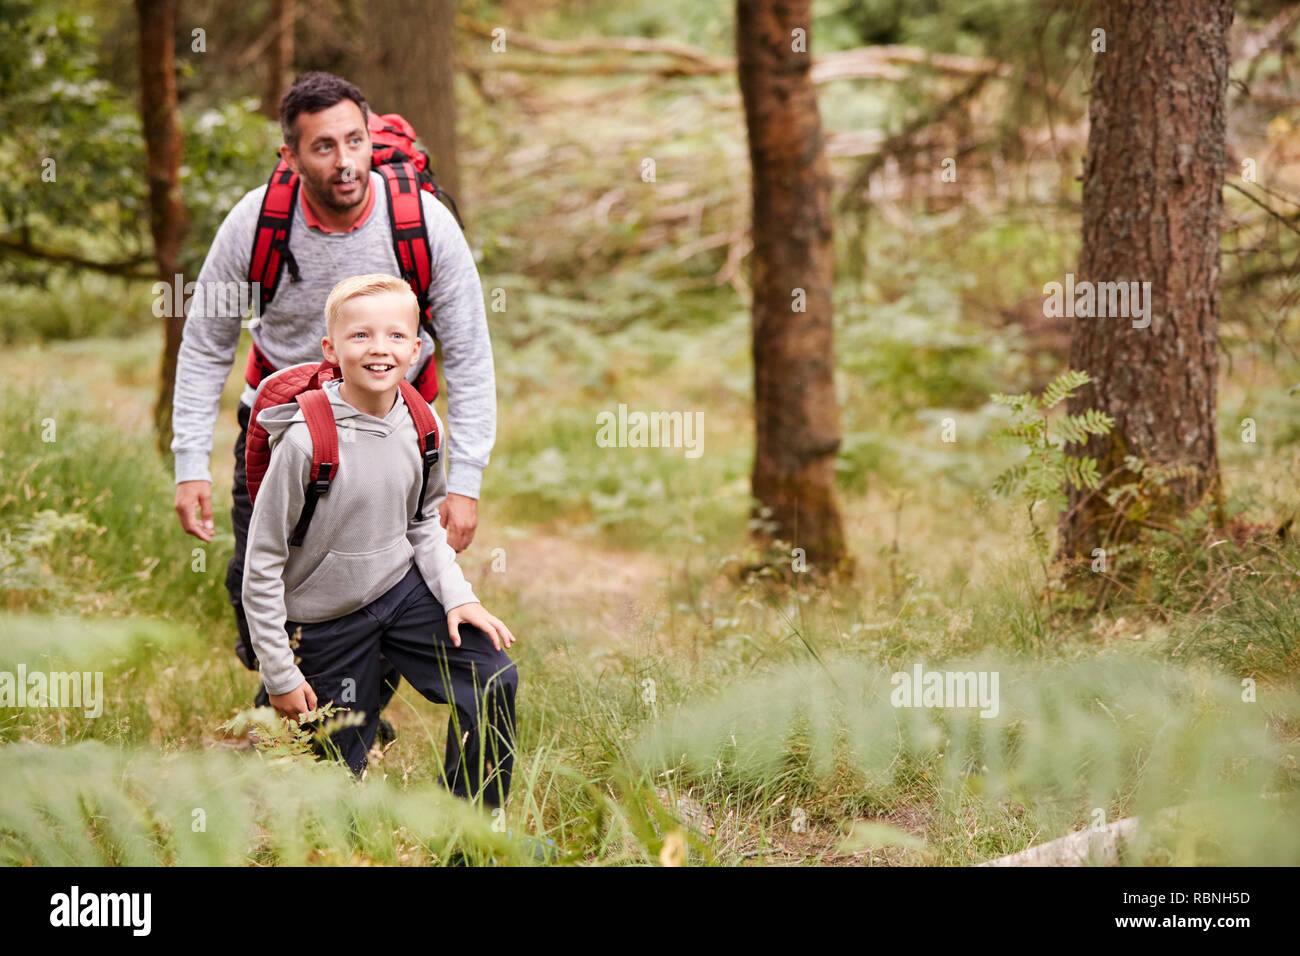 Un garçon et son père à admirer la vue lors d'une randonnée dans une forêt, à l'avant, elevated view Banque D'Images